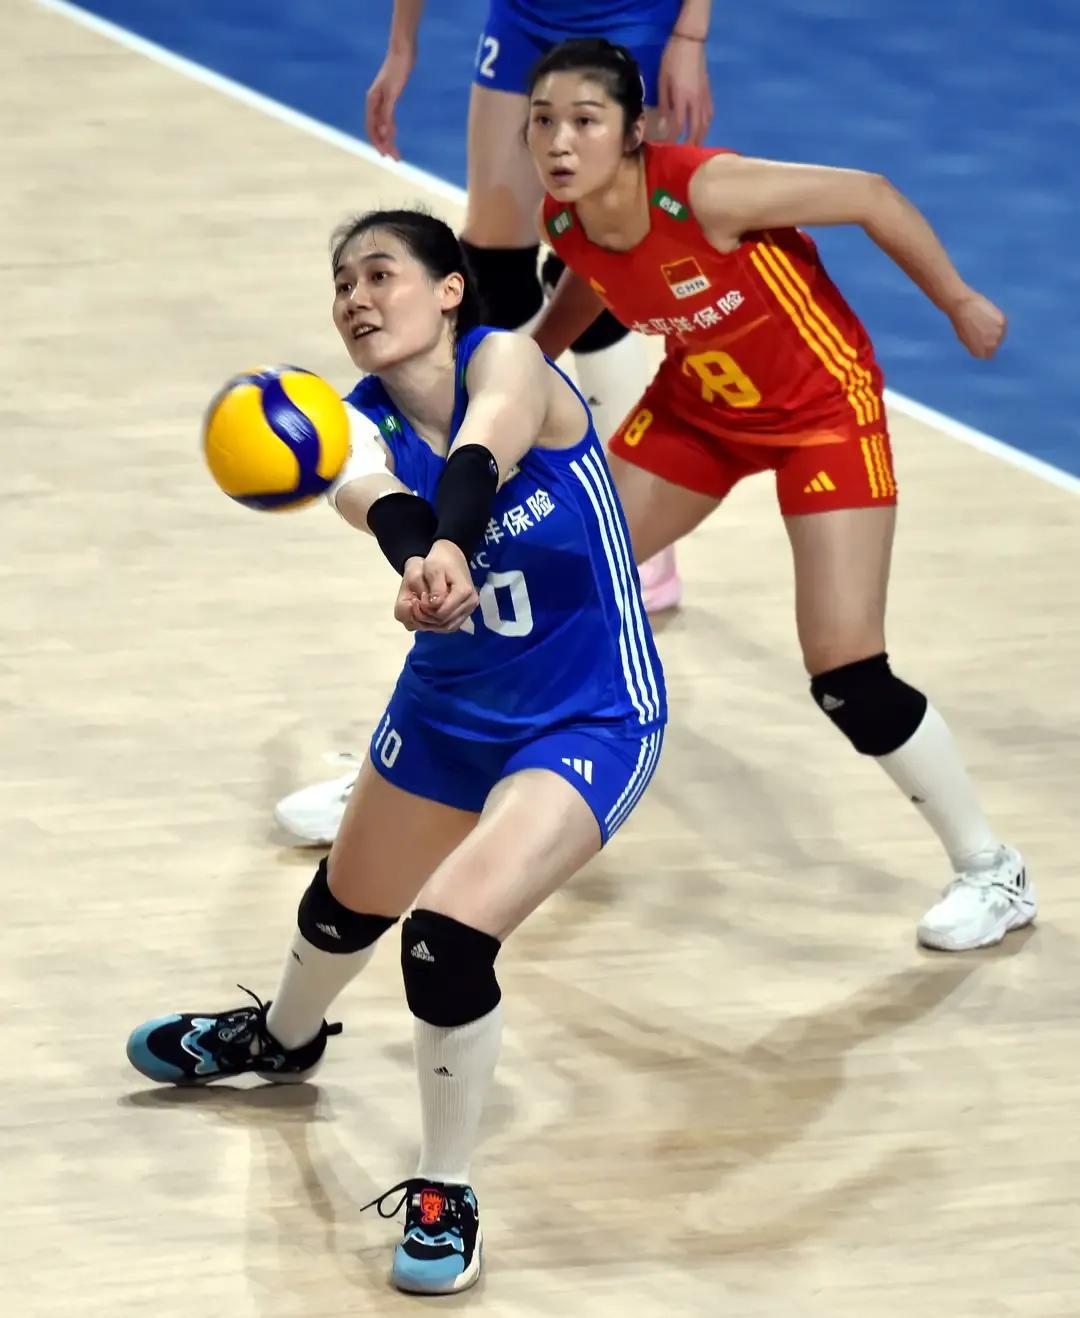 中国女排和巴西女排再掰手腕，谁发球好谁将取胜
中国女排和巴西女排将在总决赛首场相(7)